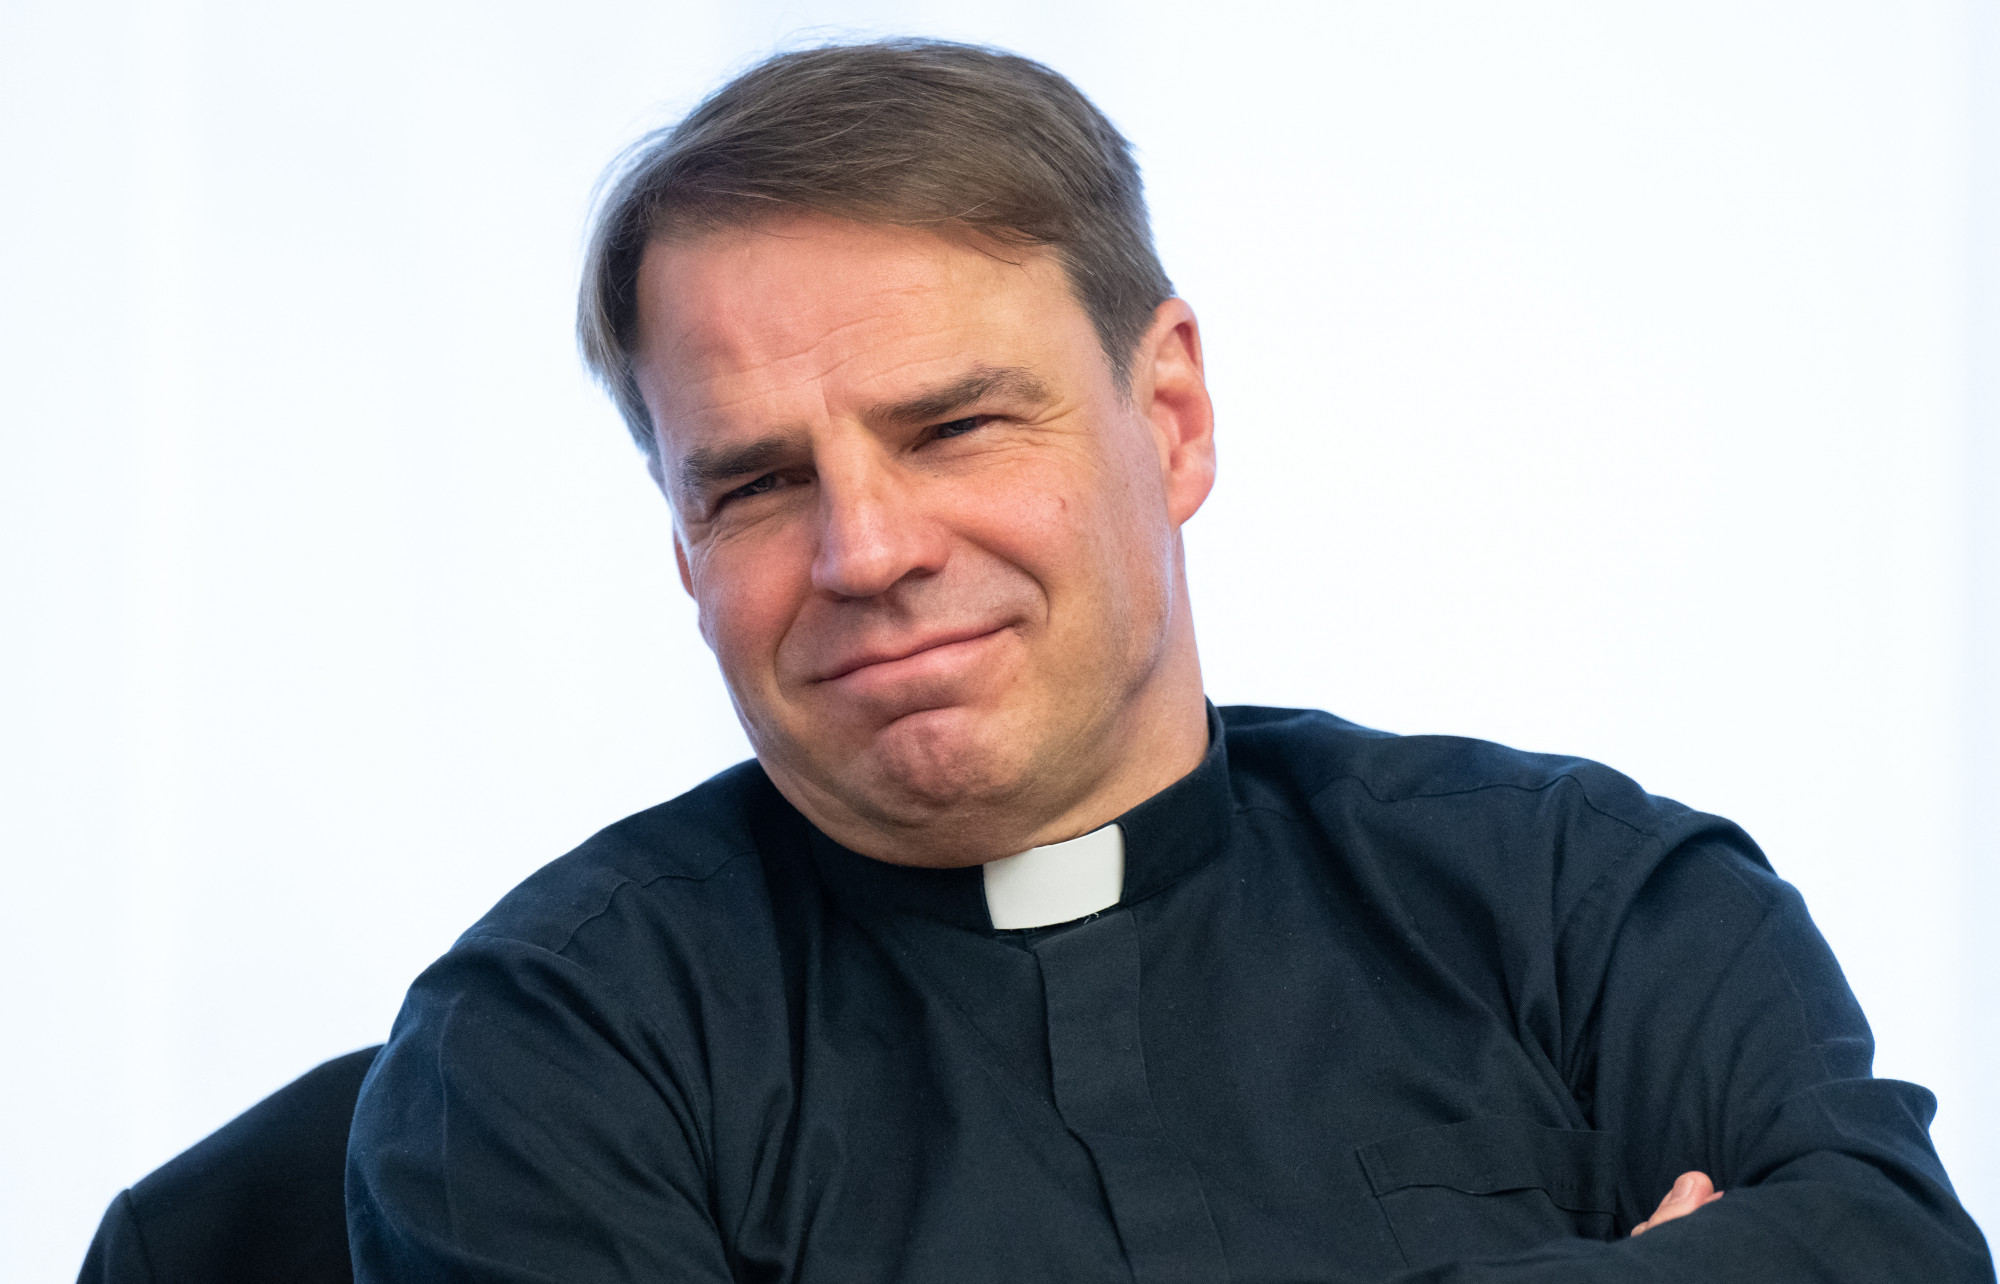 Passau püspöke sem gondolja, hogy a cölibátus a papság kulcseleme